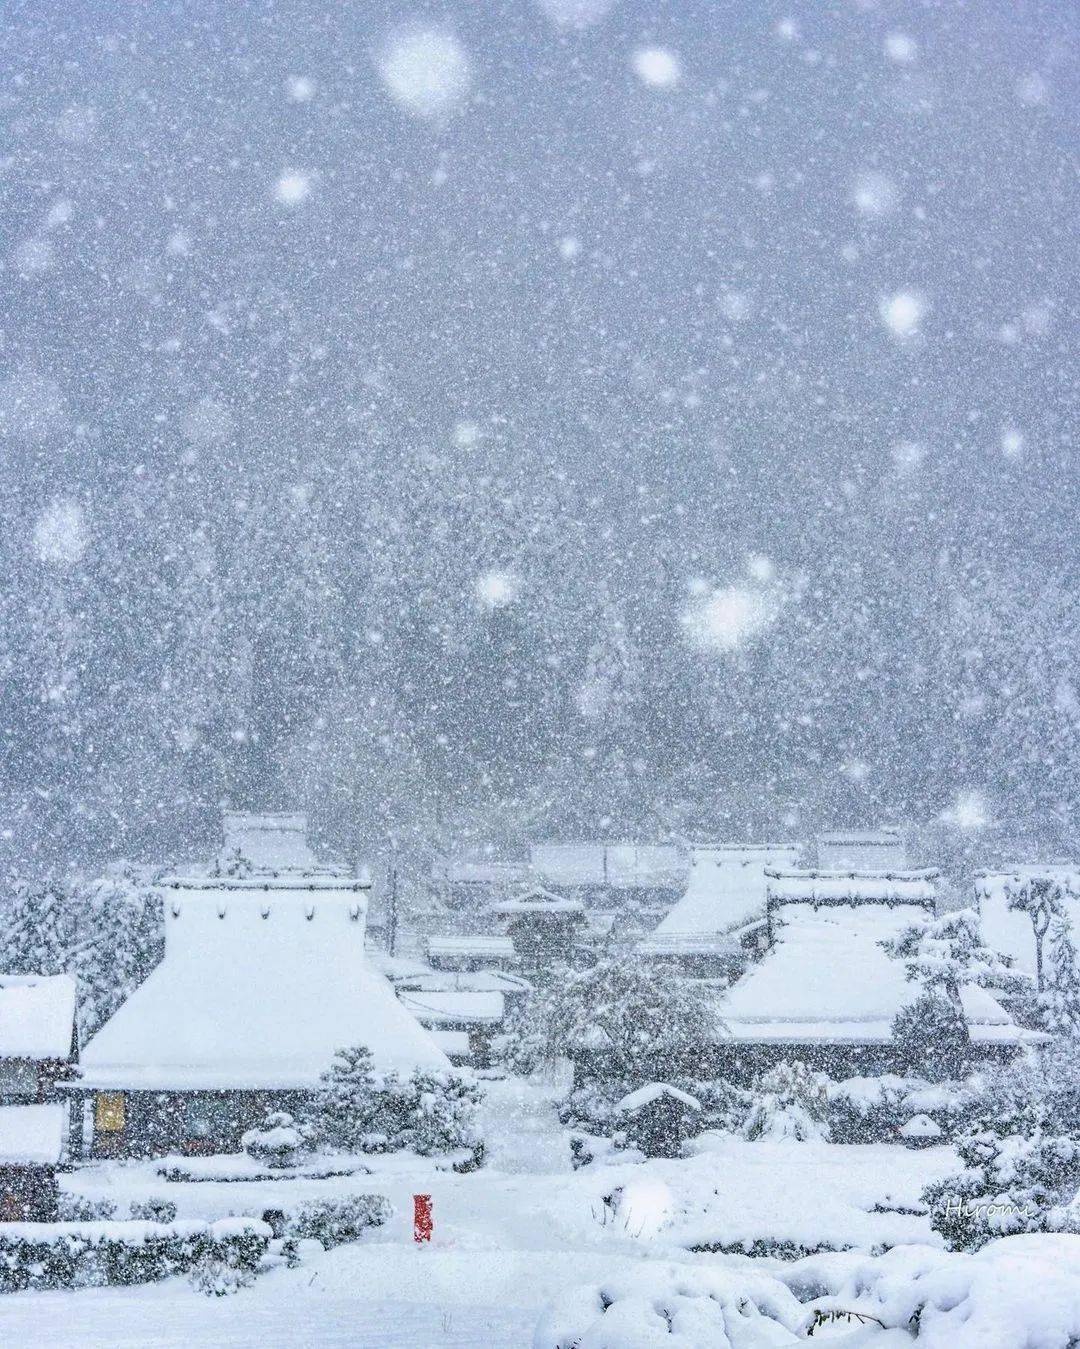 飘雪,漫天飞舞的雪花有多美丽!_photo_by_ins@t